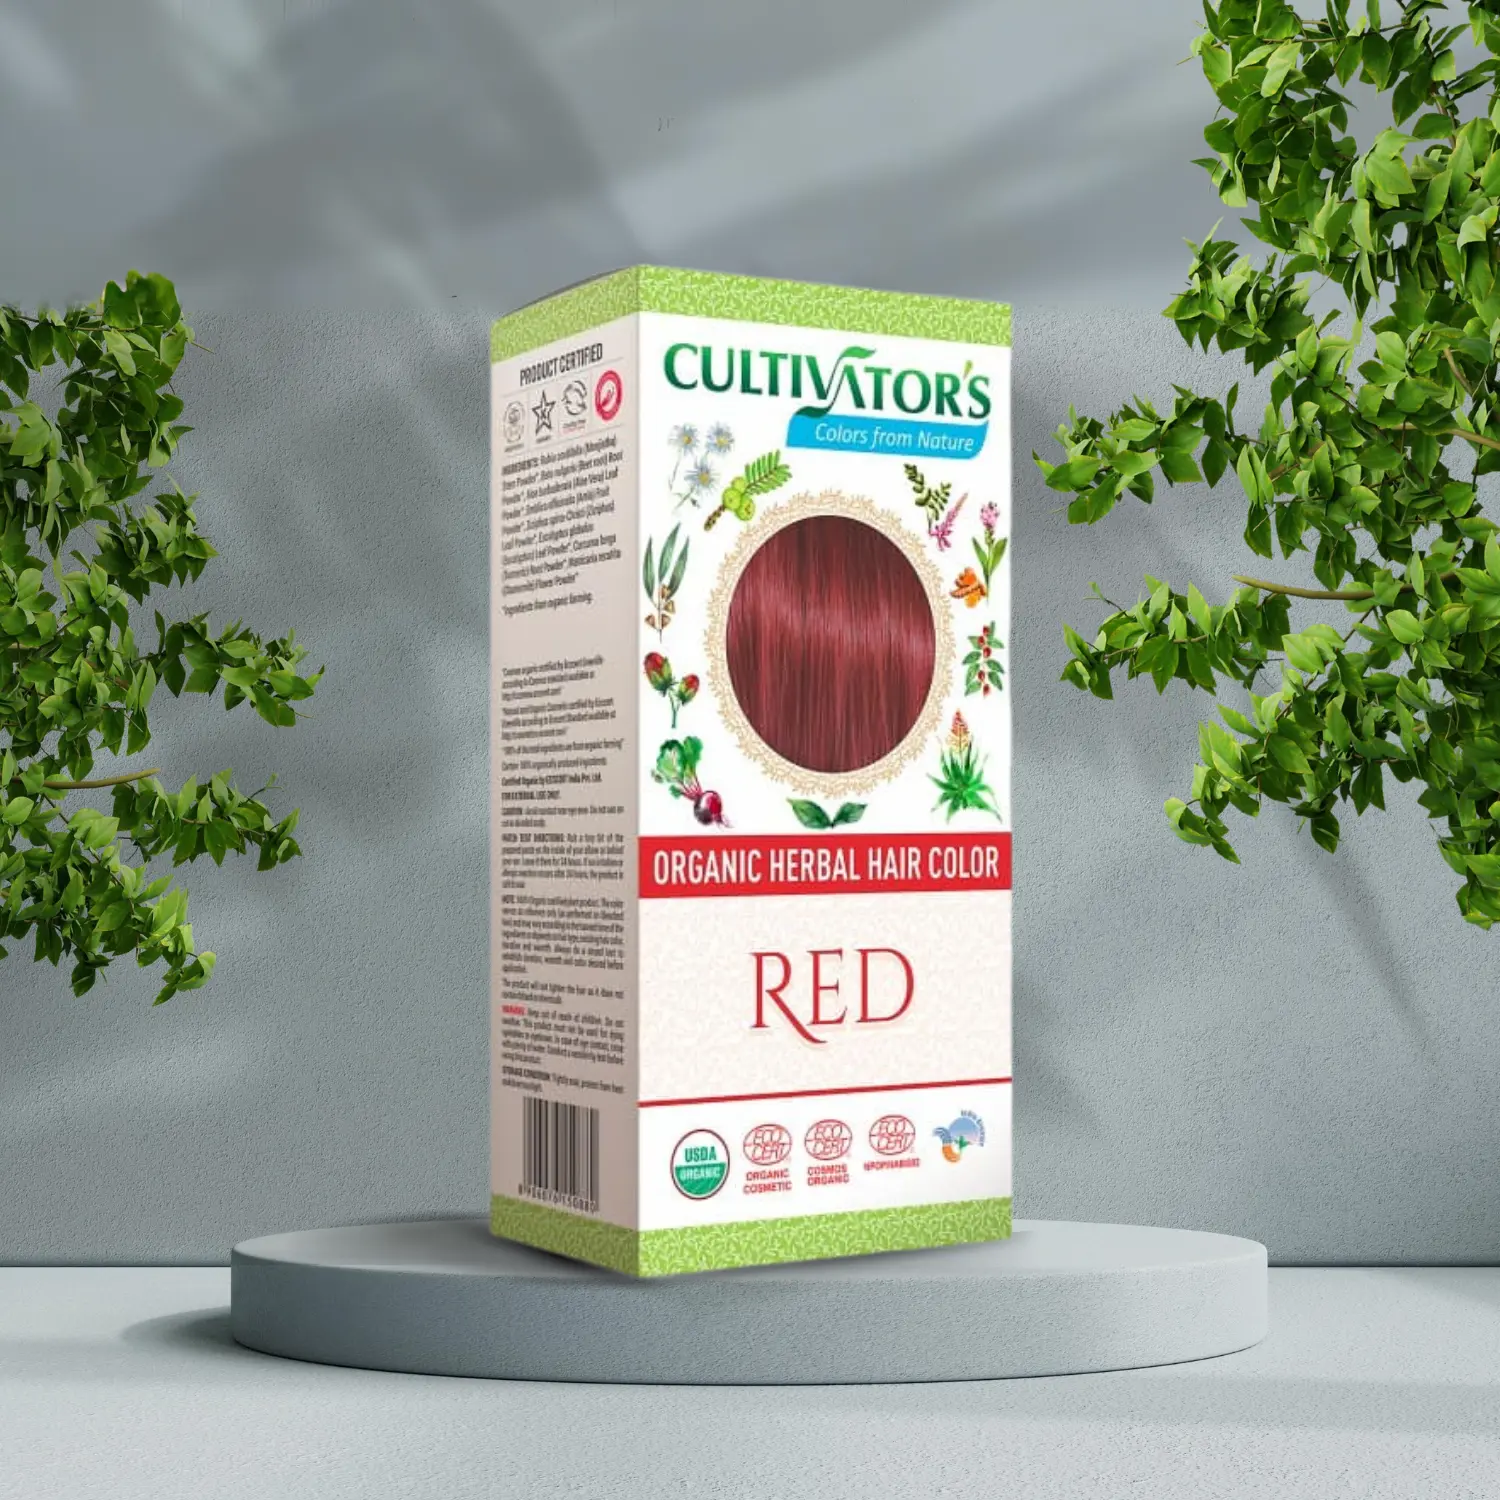 En Cultivators Henna hårfarve Rød 100g æske med rød hårfarve foran et træ, der fremmer helbred og velvære.